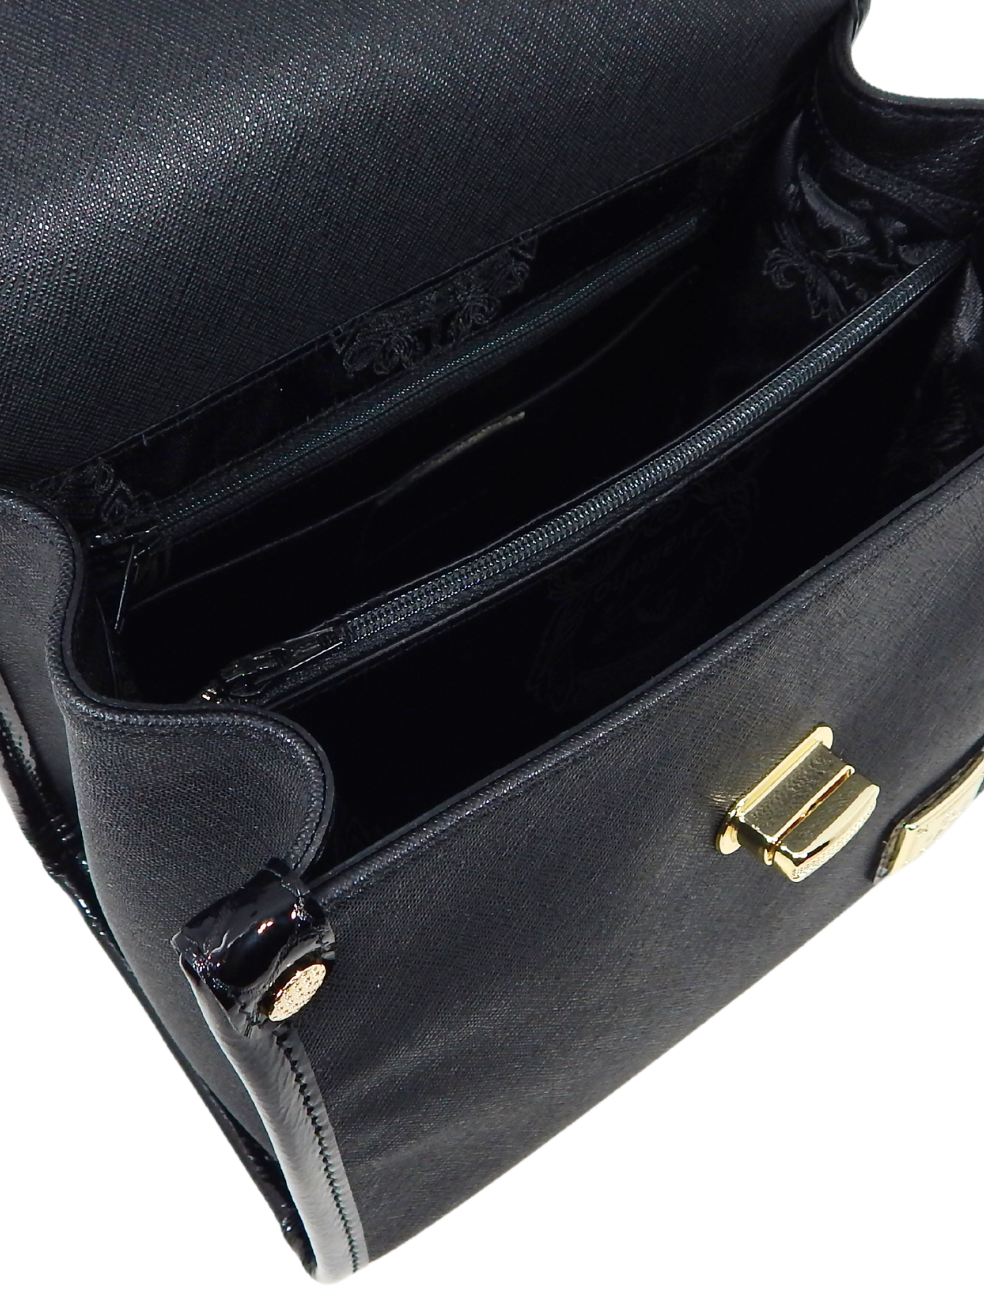 Cavalinho Cherry Blossom Handbag SKU 18810518.01 #color_black